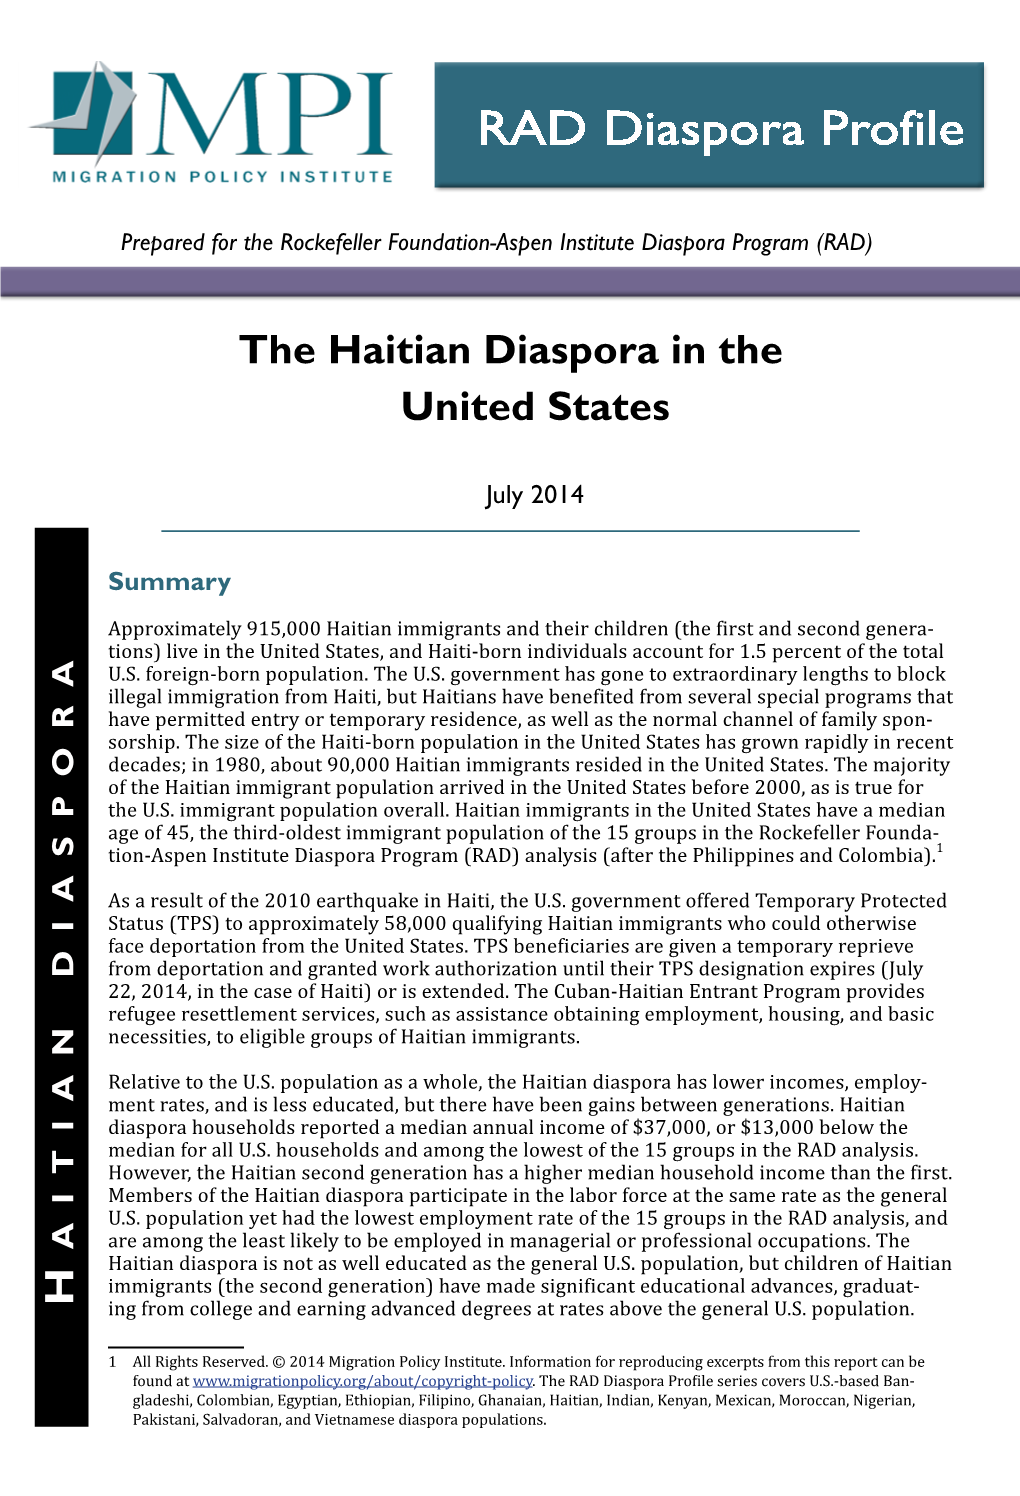 The Haitian Diaspora in the United States